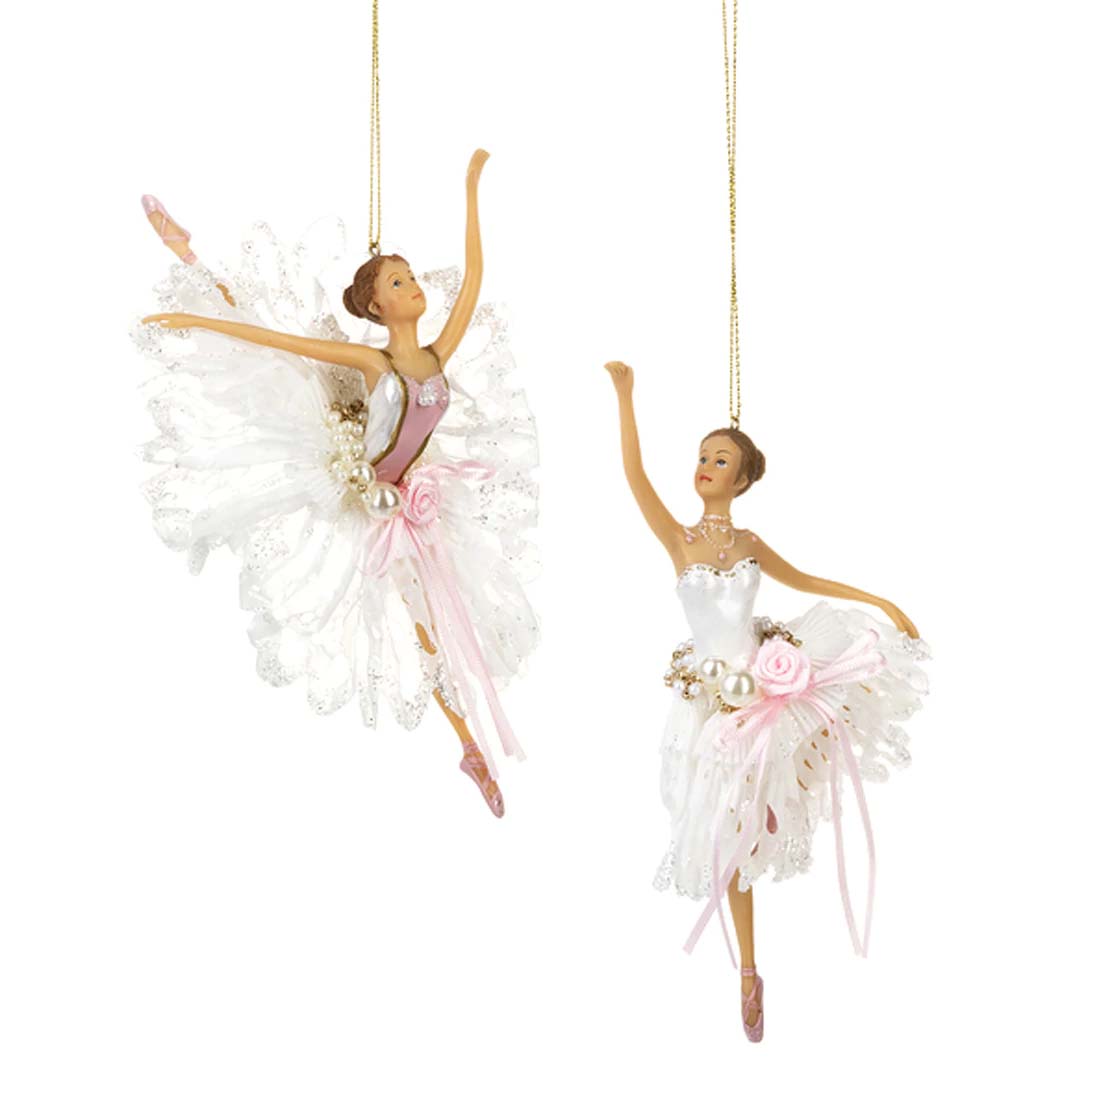 Beautiful Ballerina Ornament (2 Poses)